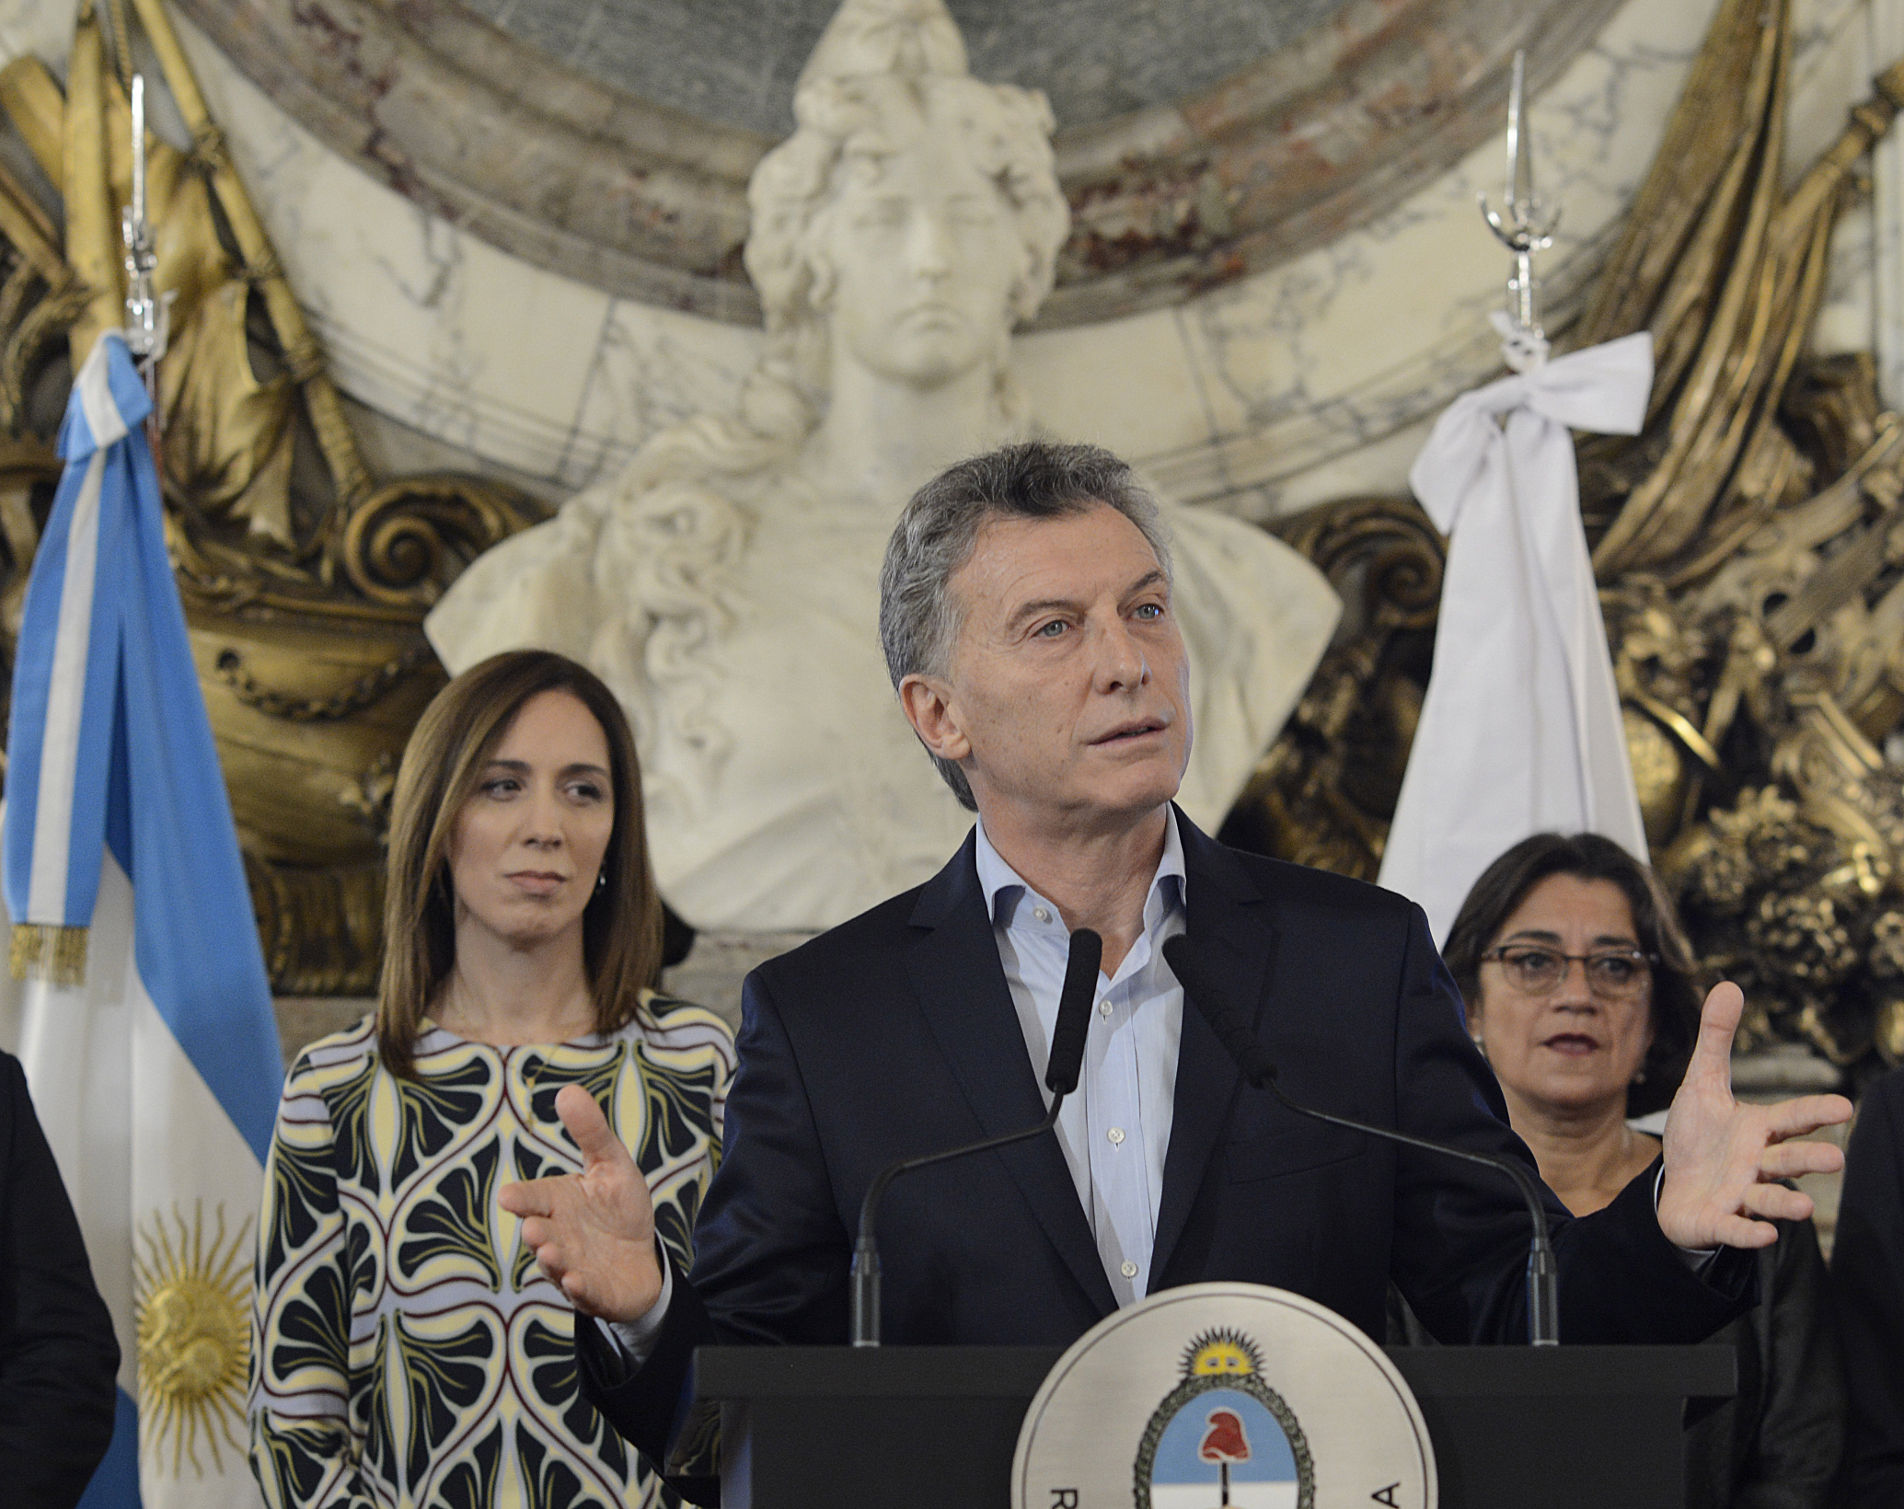 El presidente Macri presentó el Compromiso Federal para la Modernización del Estado